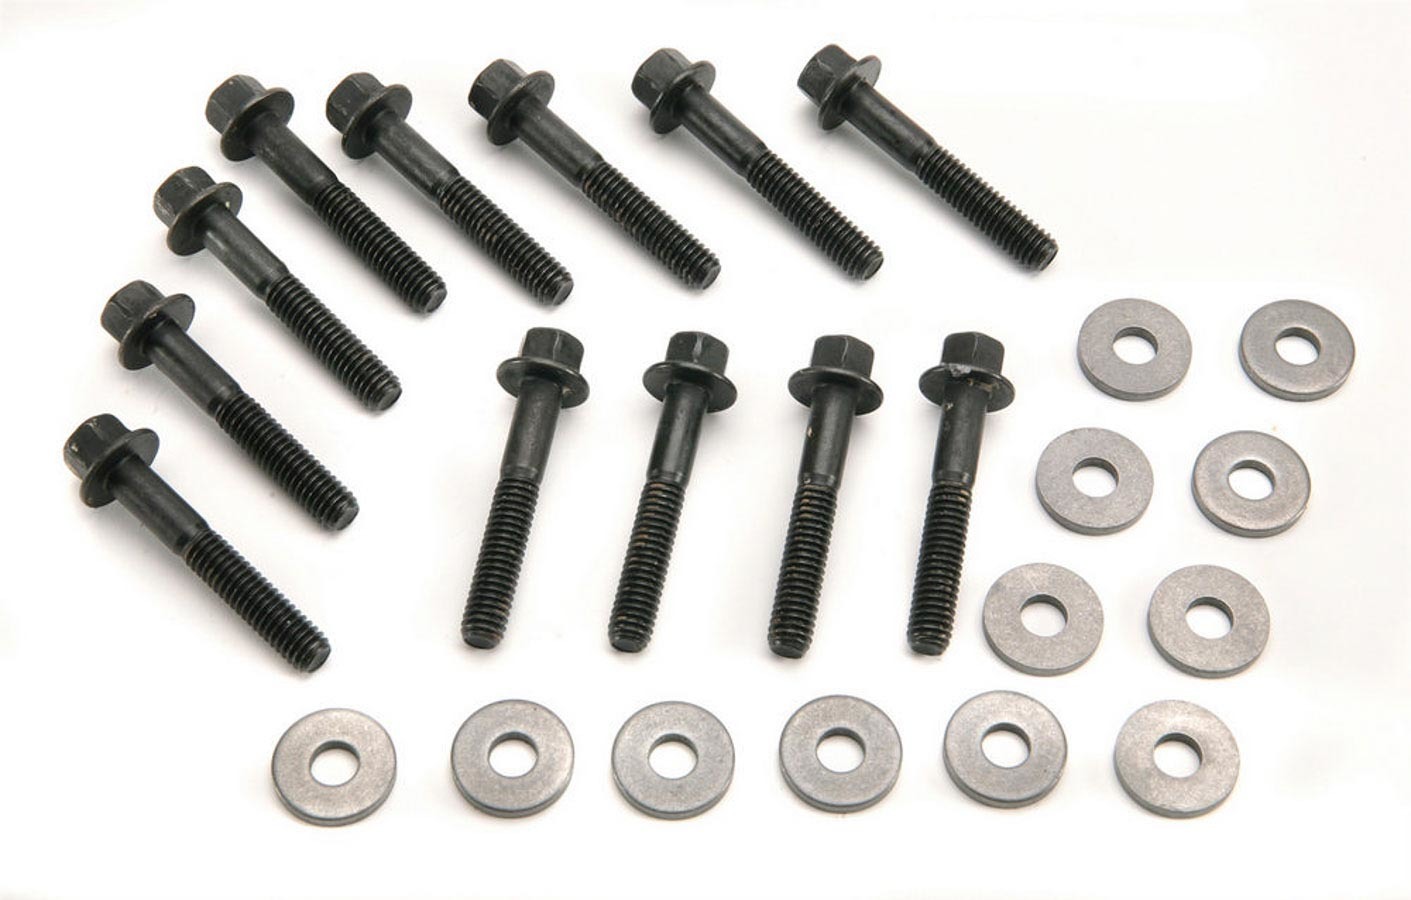 Intake Manifold Bolt Kit - Super - Hex Head - Steel - Black Oxide - Small Block Ford - Kit